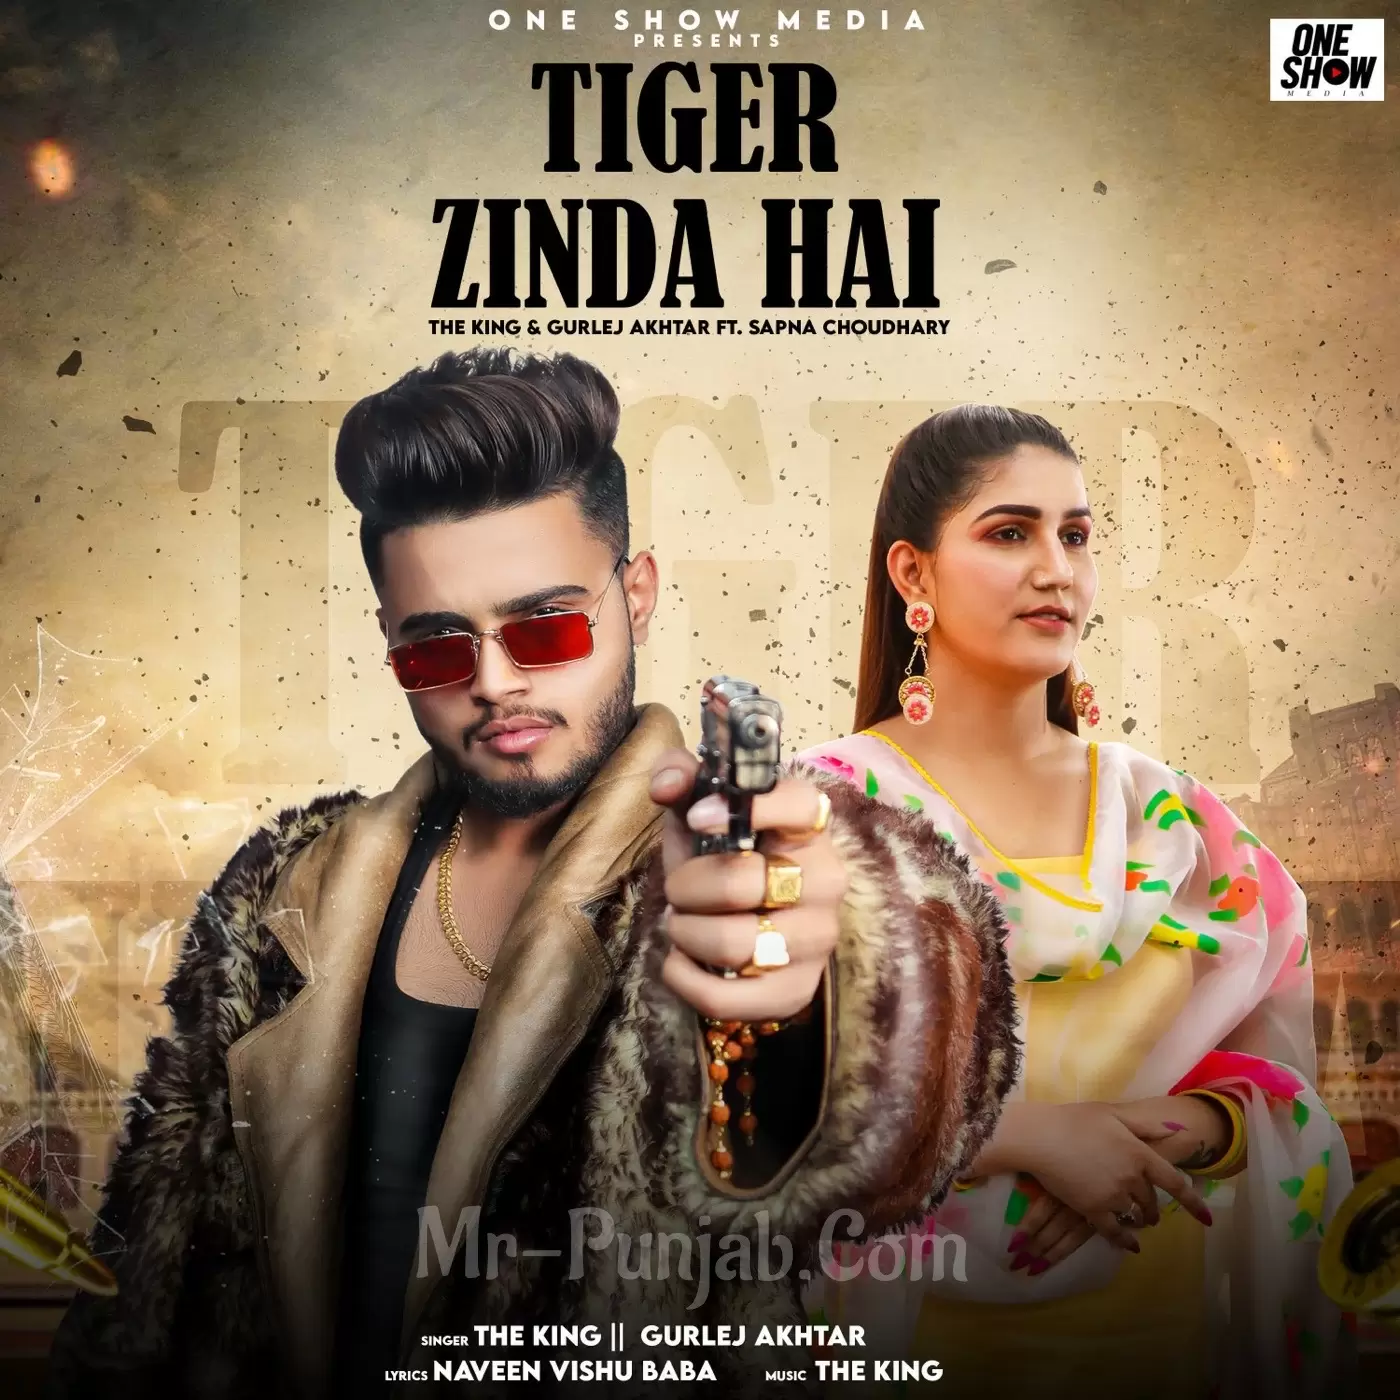 Tiger Zinda Hai The King Mp3 Download Song - Mr-Punjab